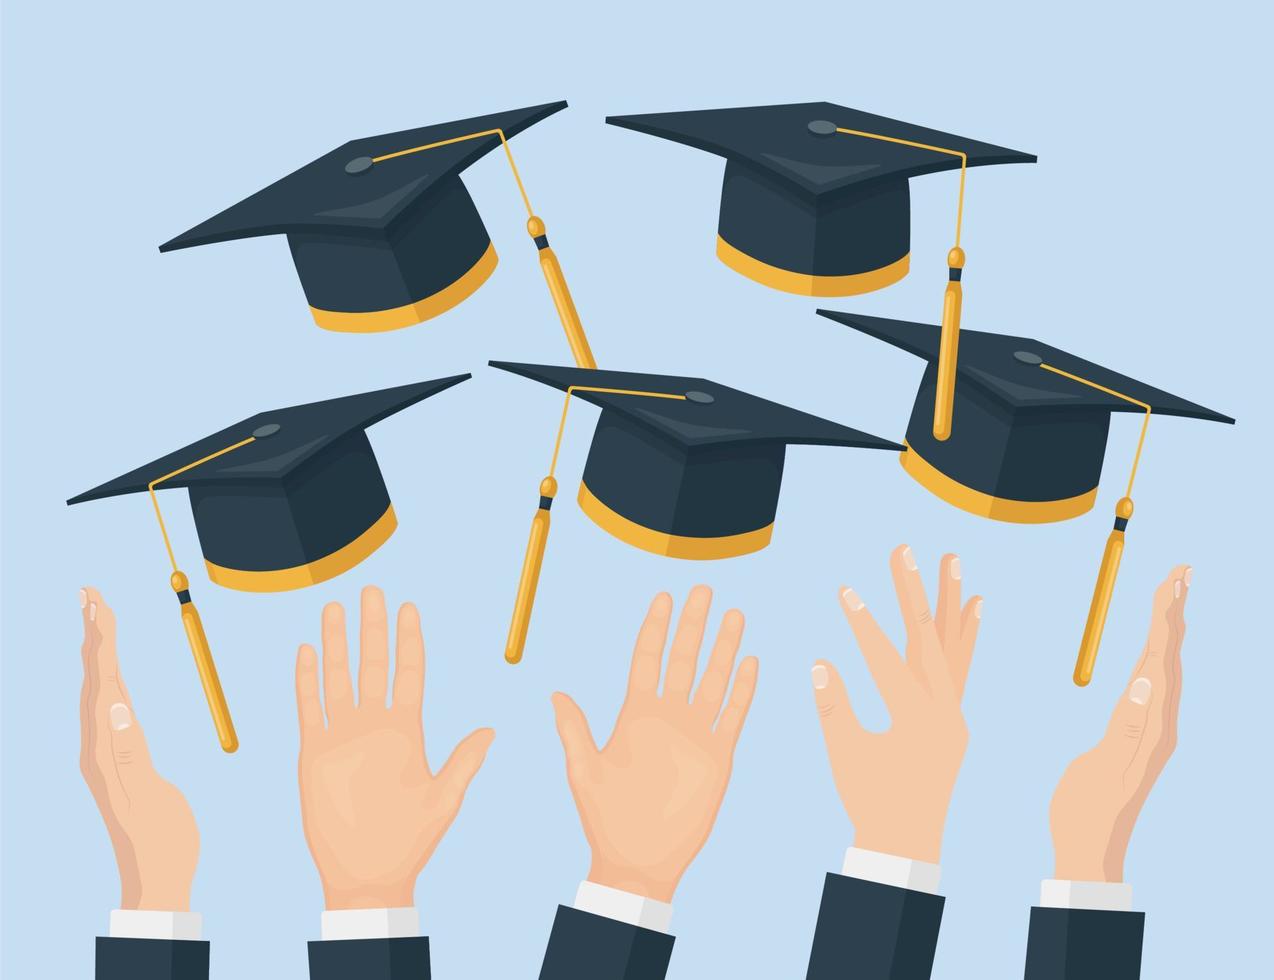 estudiantes que se gradúan lanzando gorras de graduación al aire, volando sombreros académicos vector